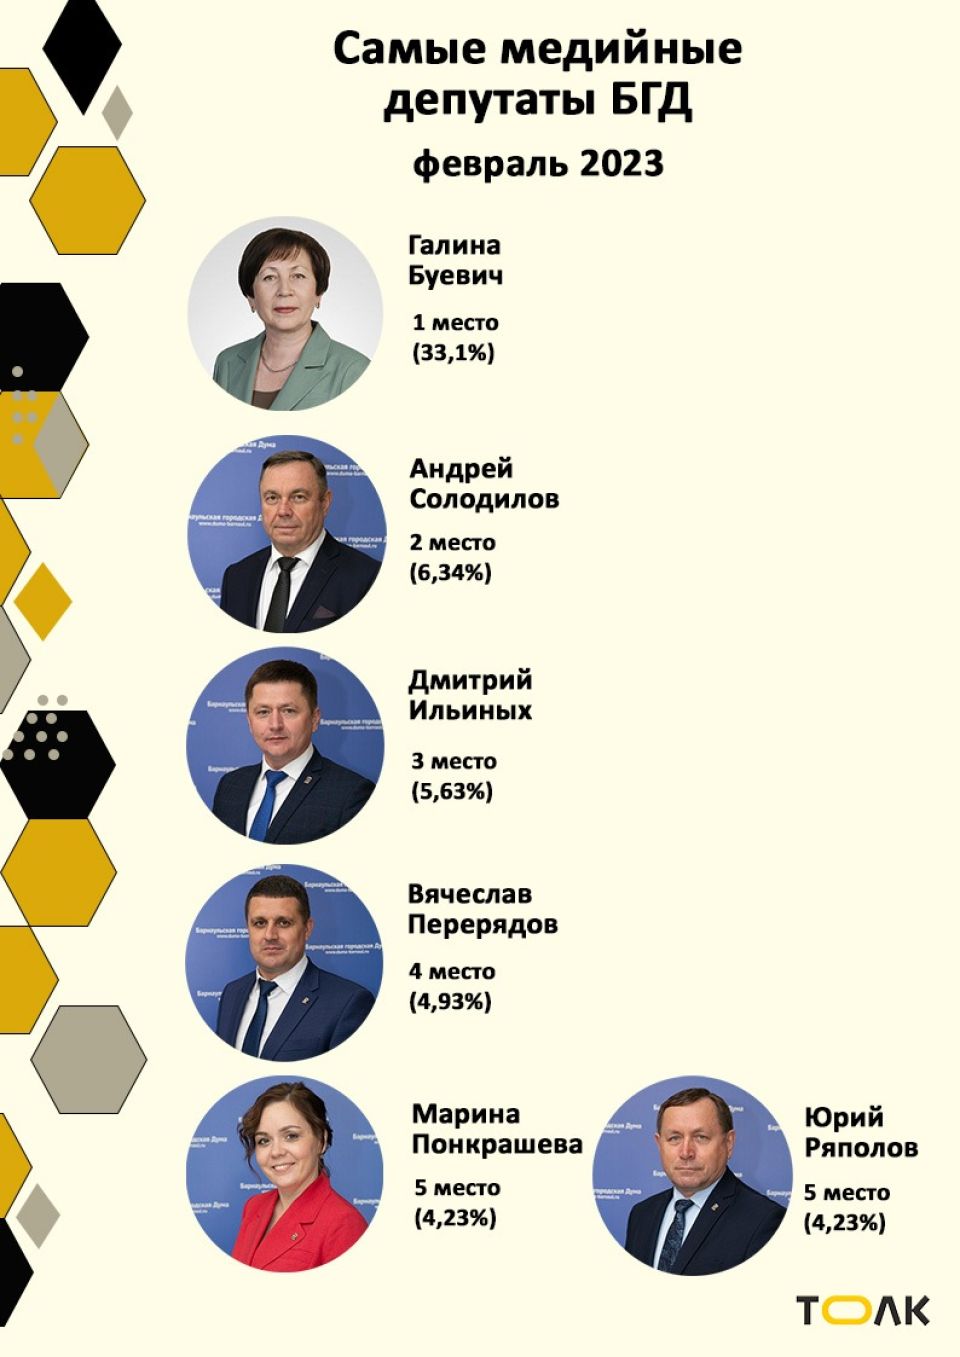 Рейтинг медийности депутатов БГД, февраль 2023 года